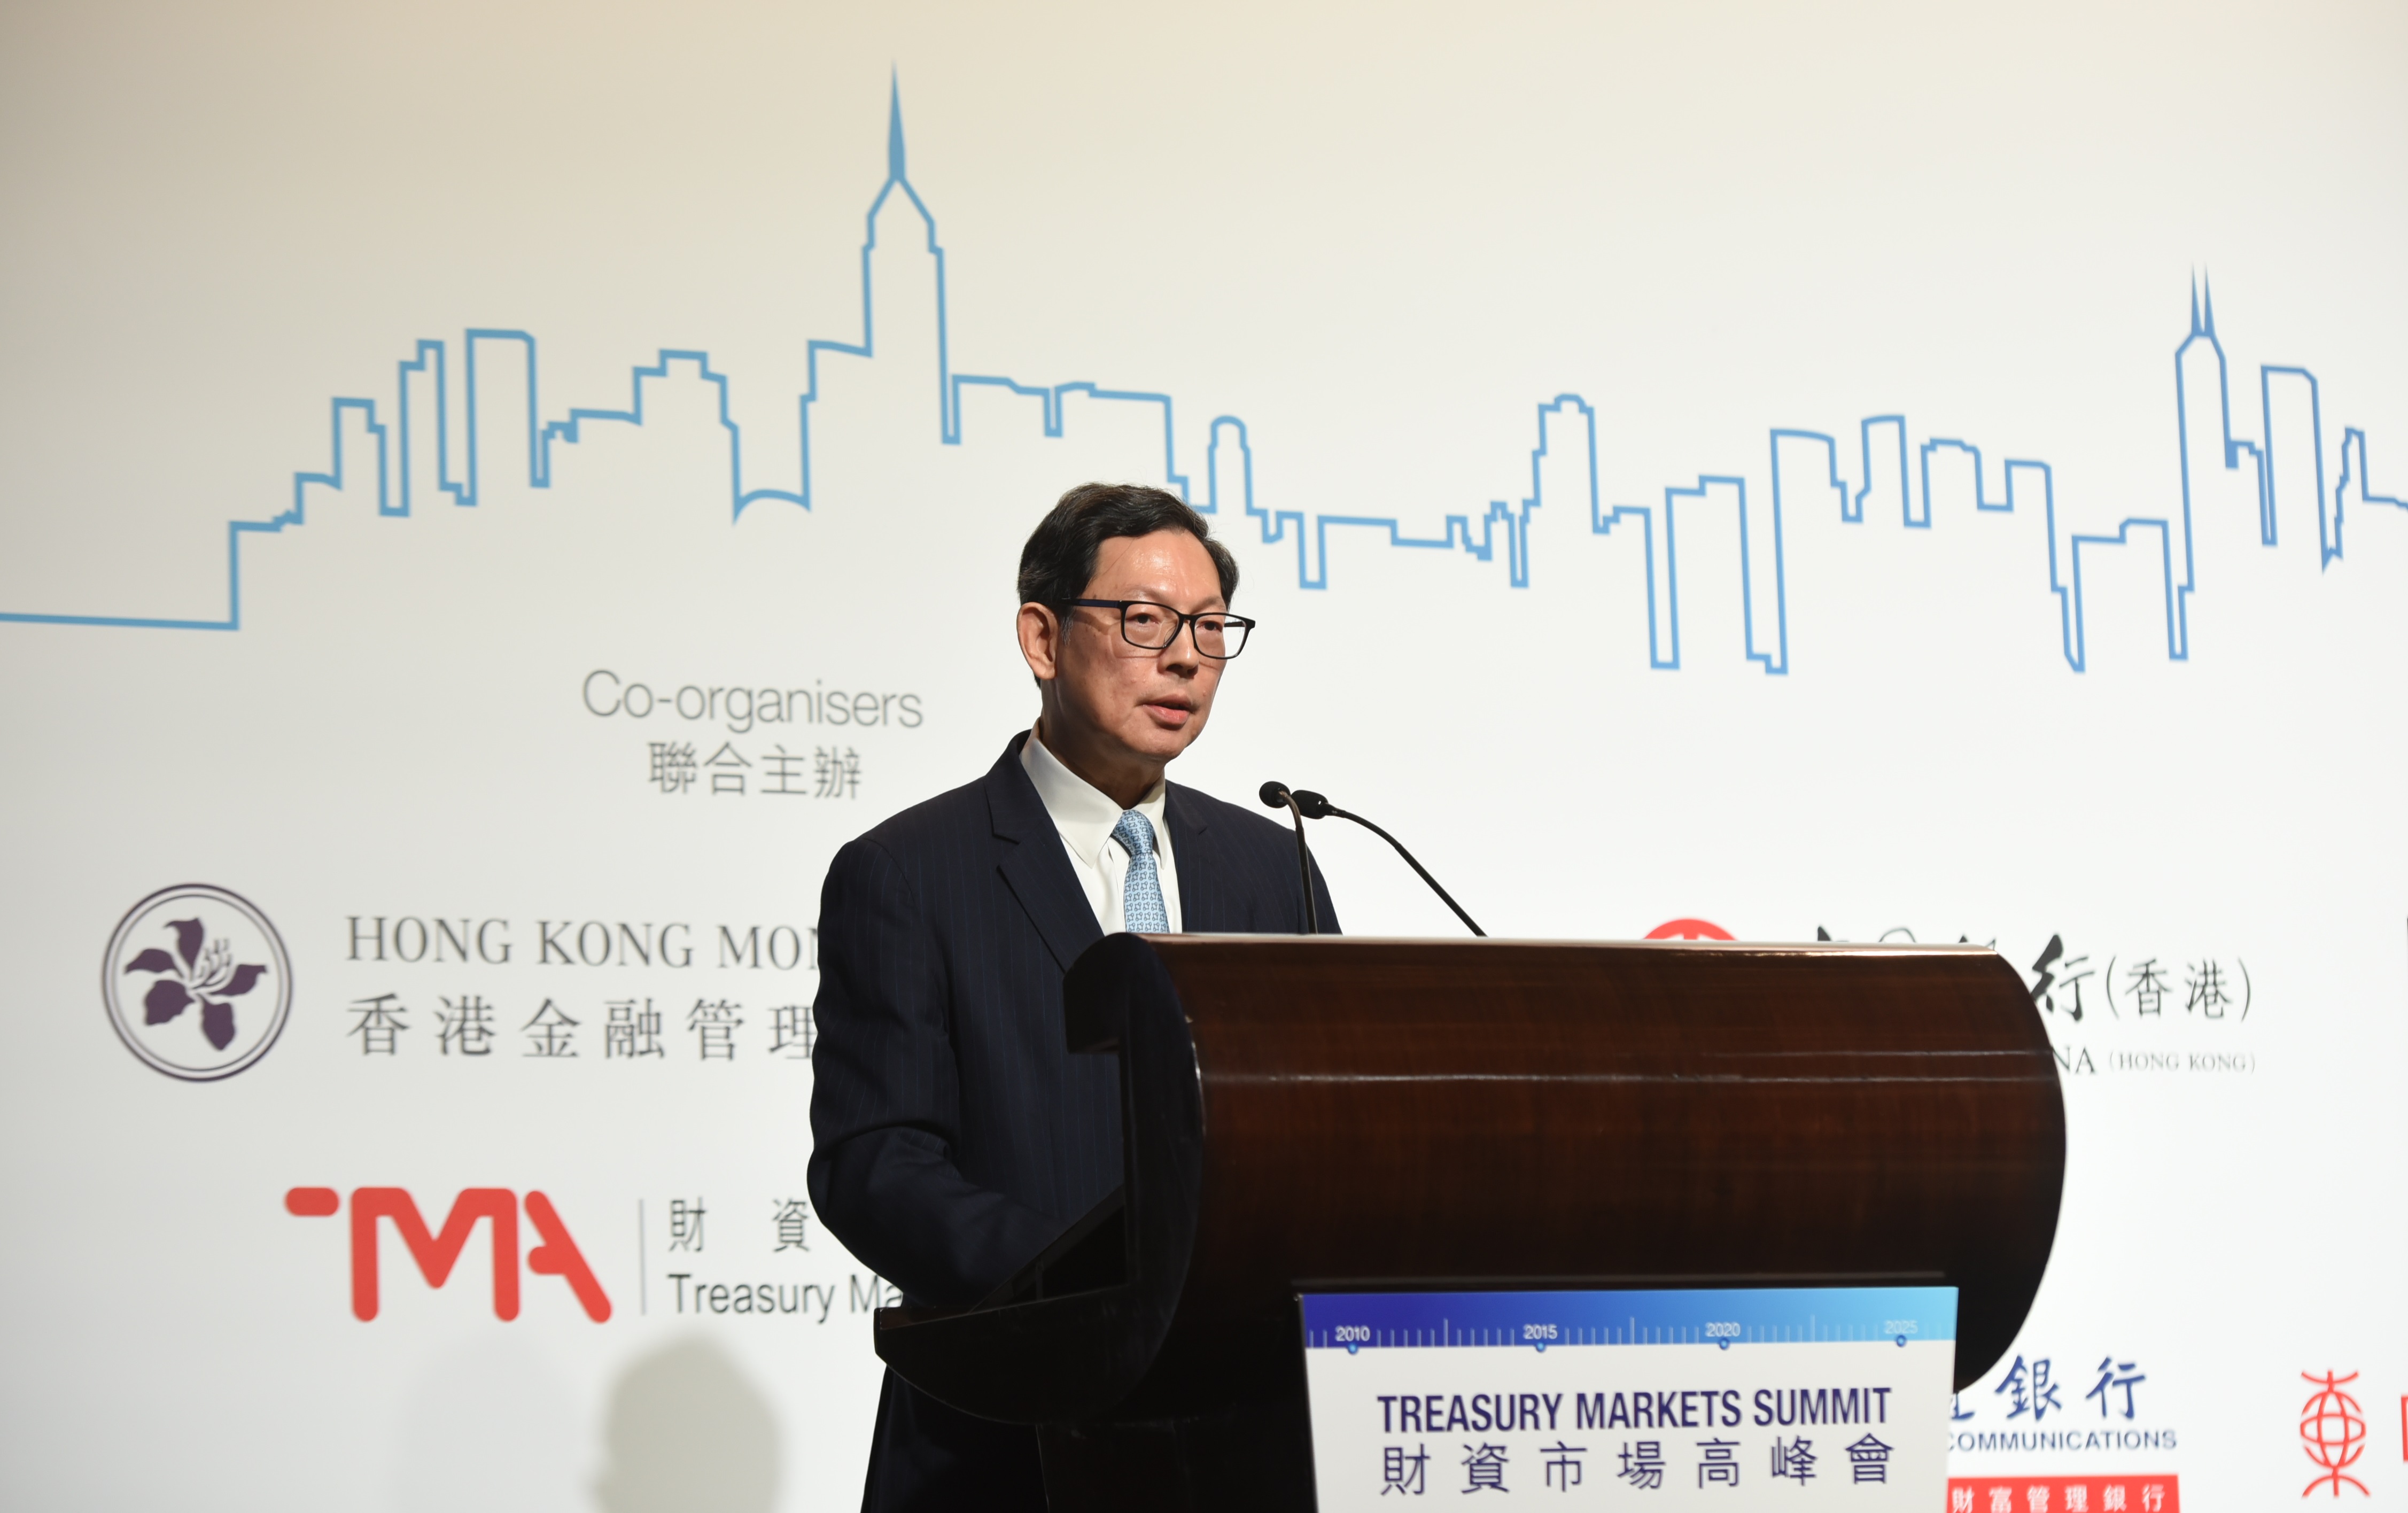 金管局总裁陈德霖先生在香港举行的2019财资市场高峰会上致欢迎辞及发表主题演讲。